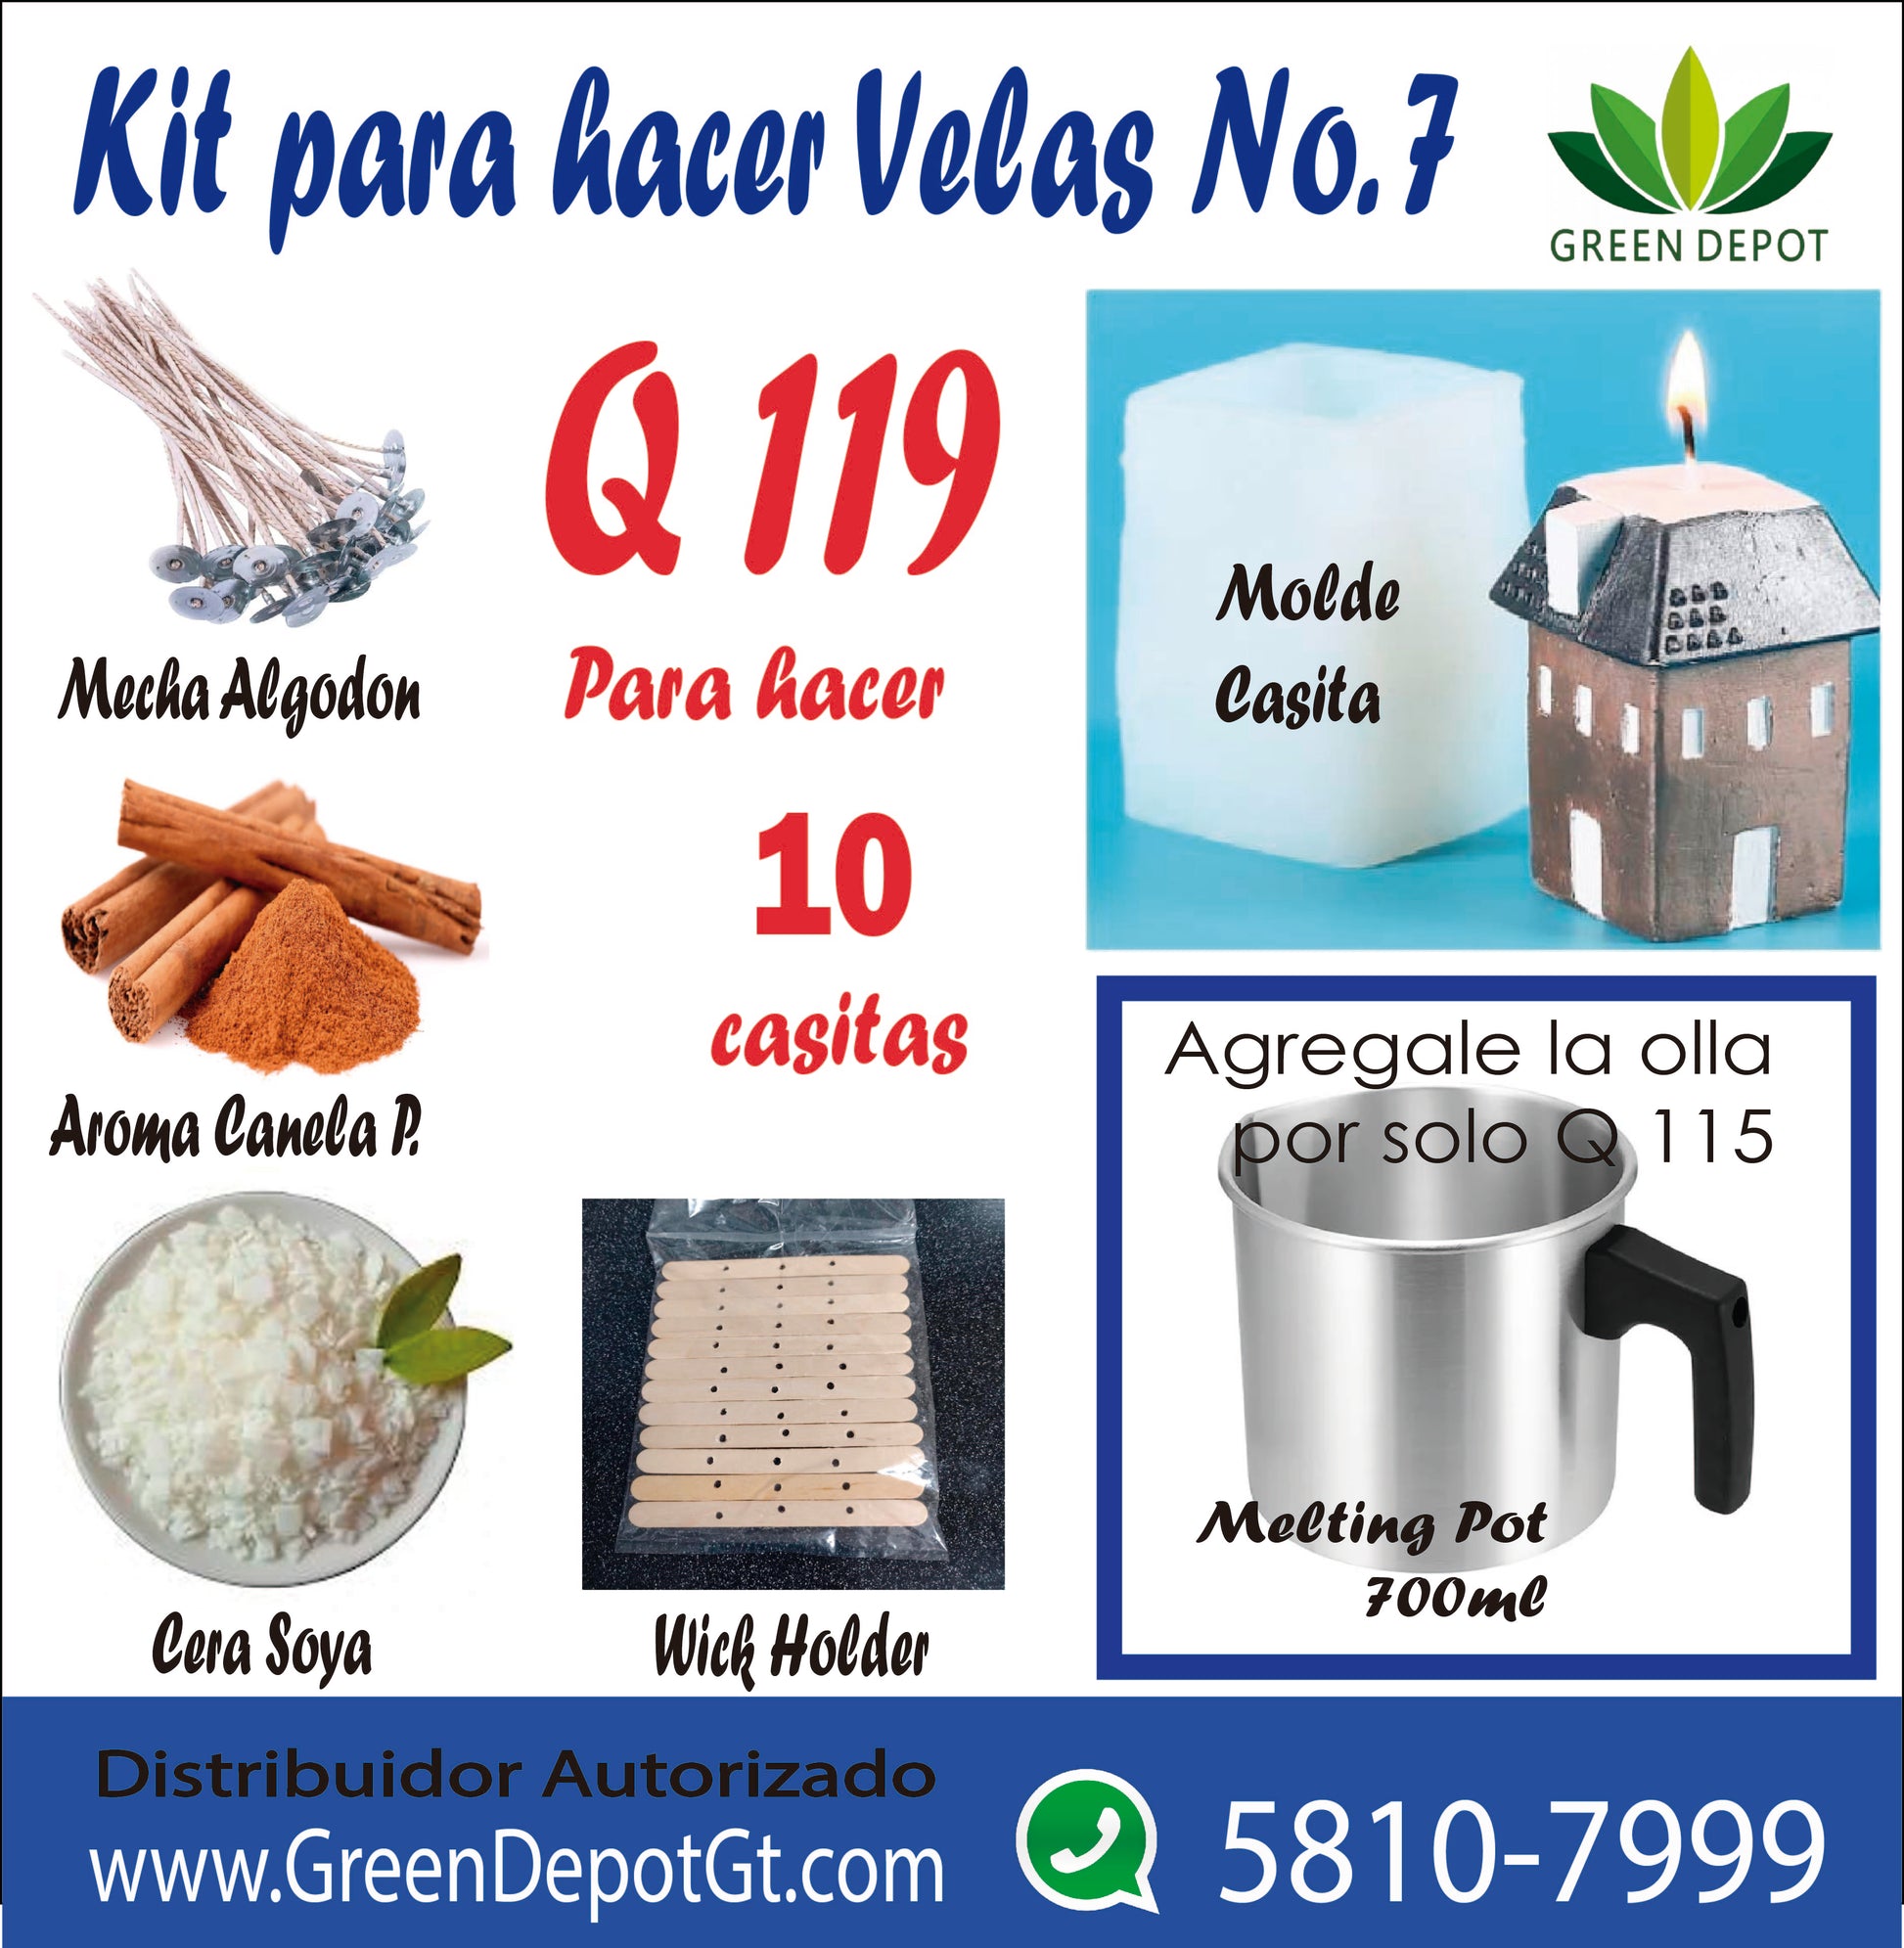 Kits para velas – Green Depot Guatemala